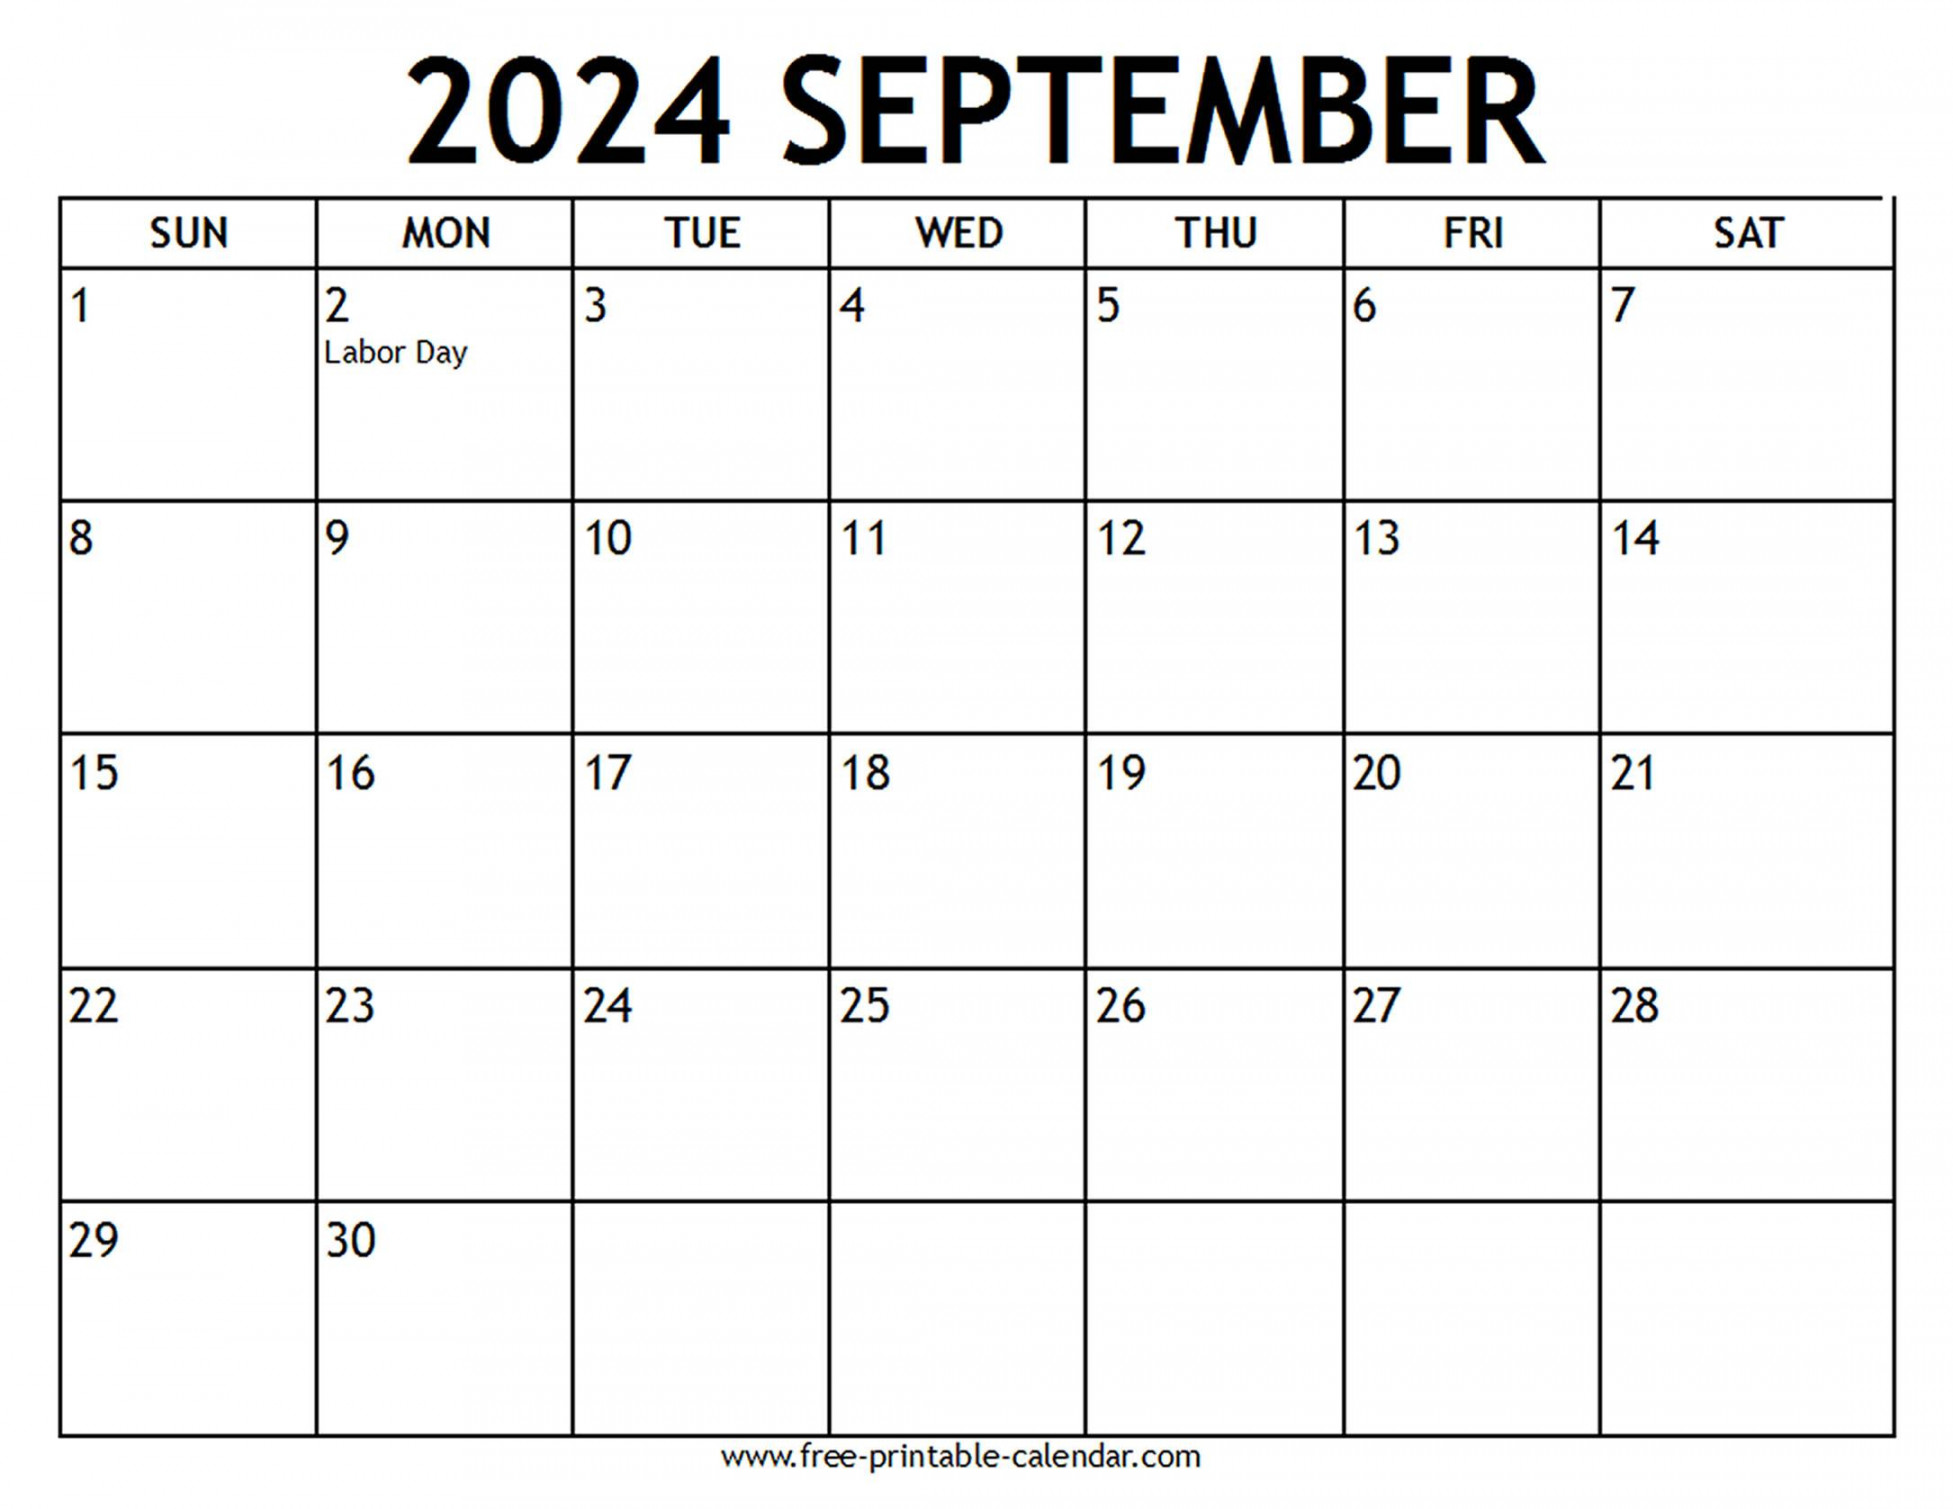 september calendar us holidays free printable calendar com 0